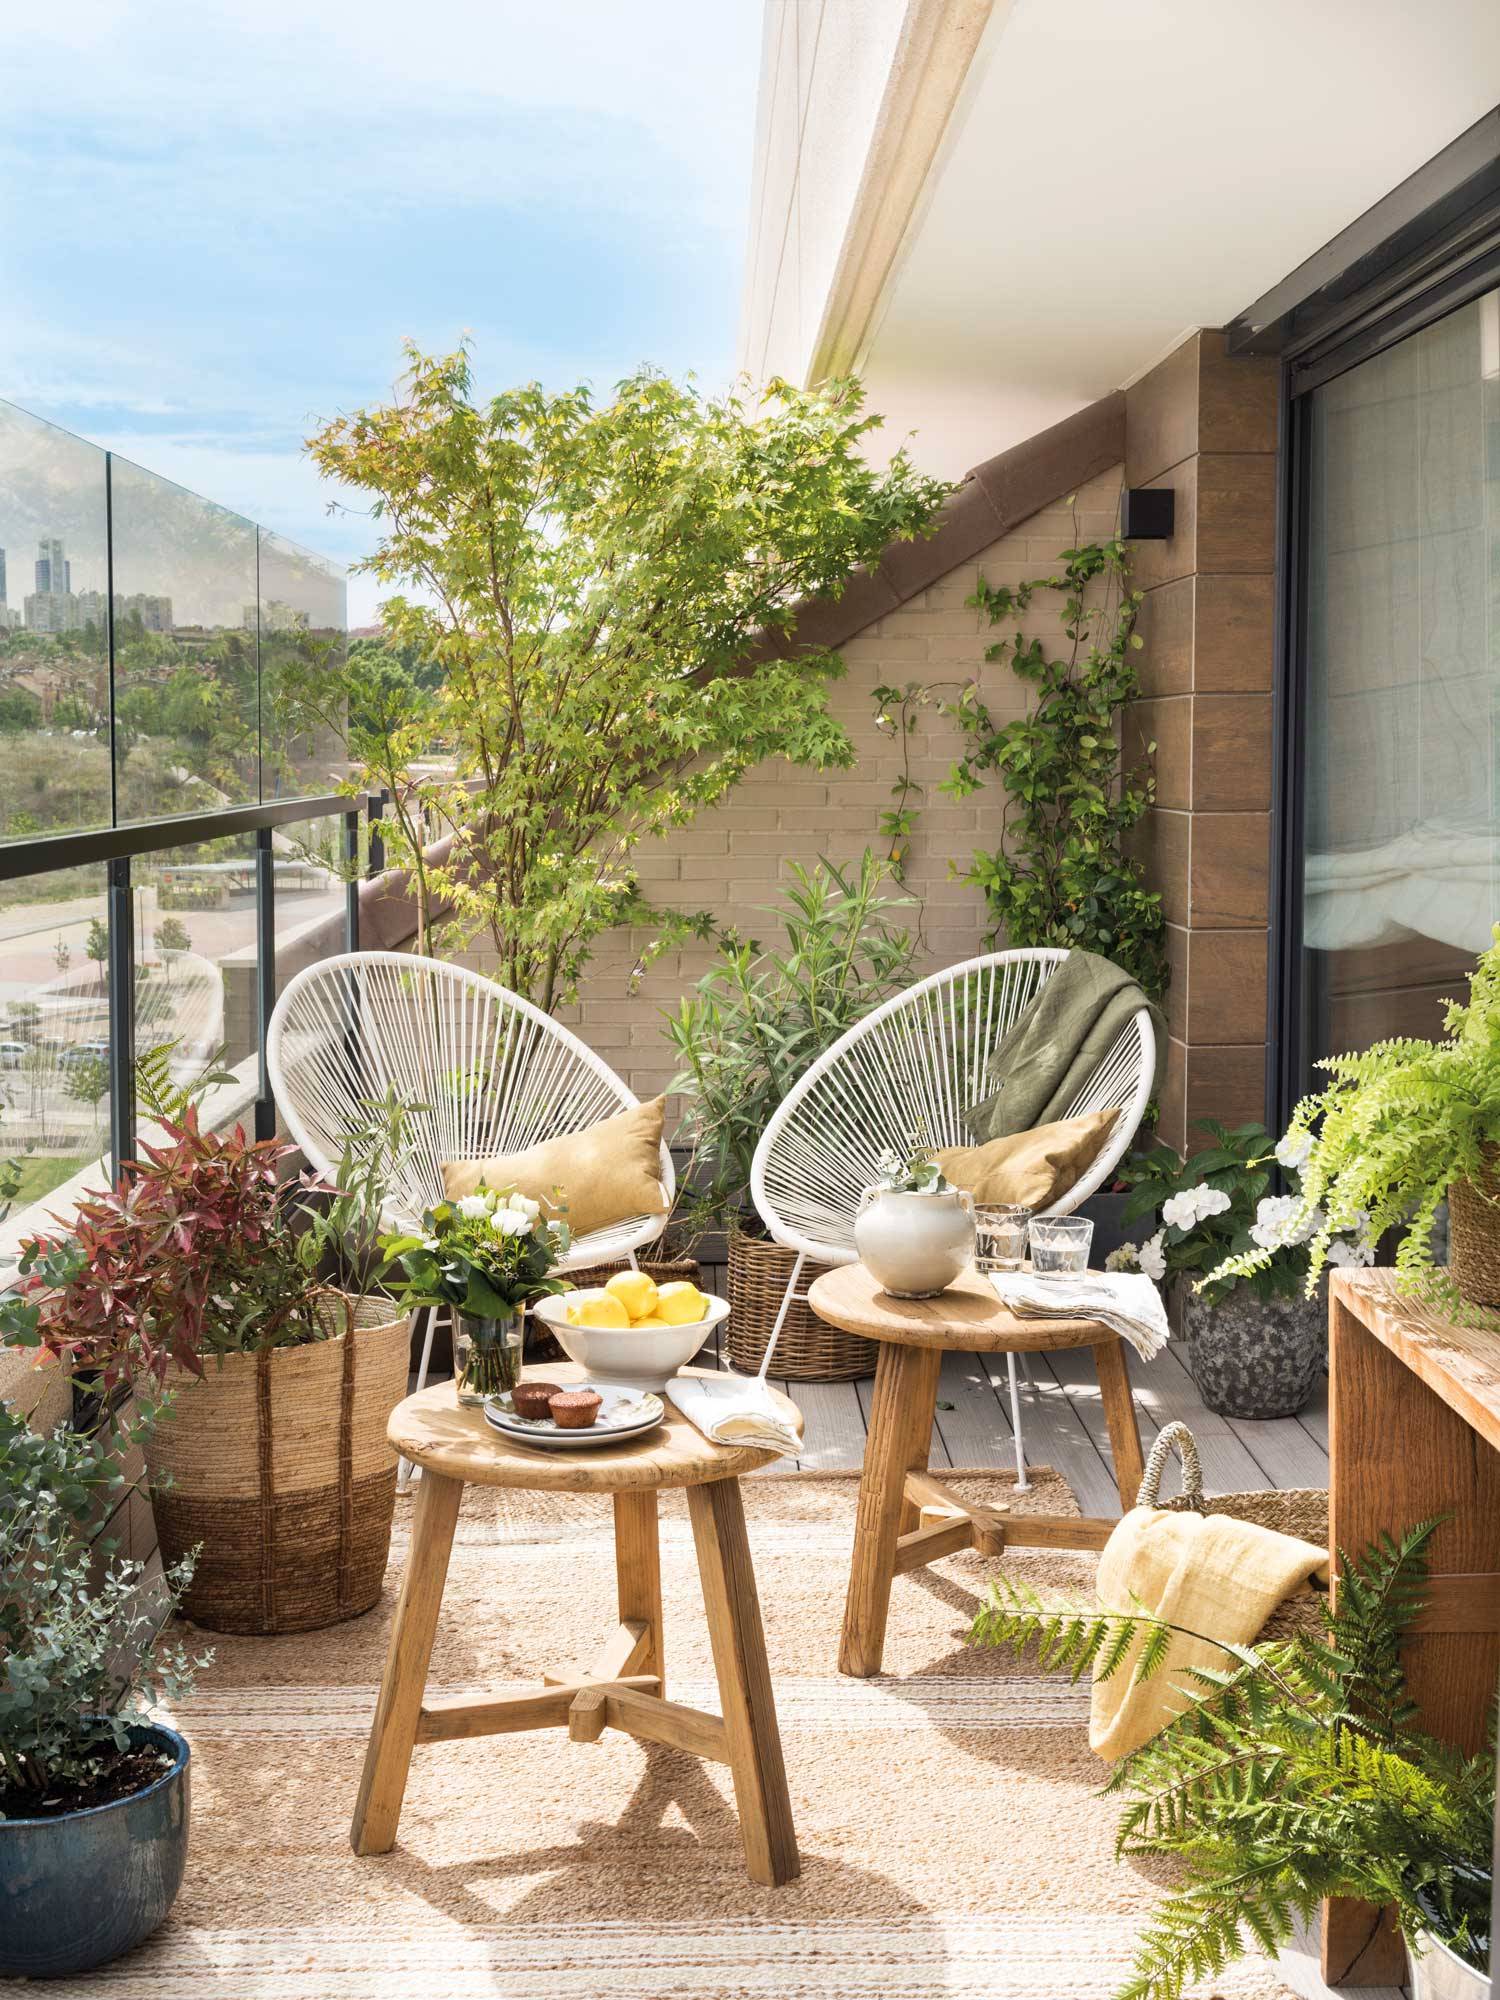 Terraza con plantas, taburetes de madera y dos sillas Acapulco blancas 00511496